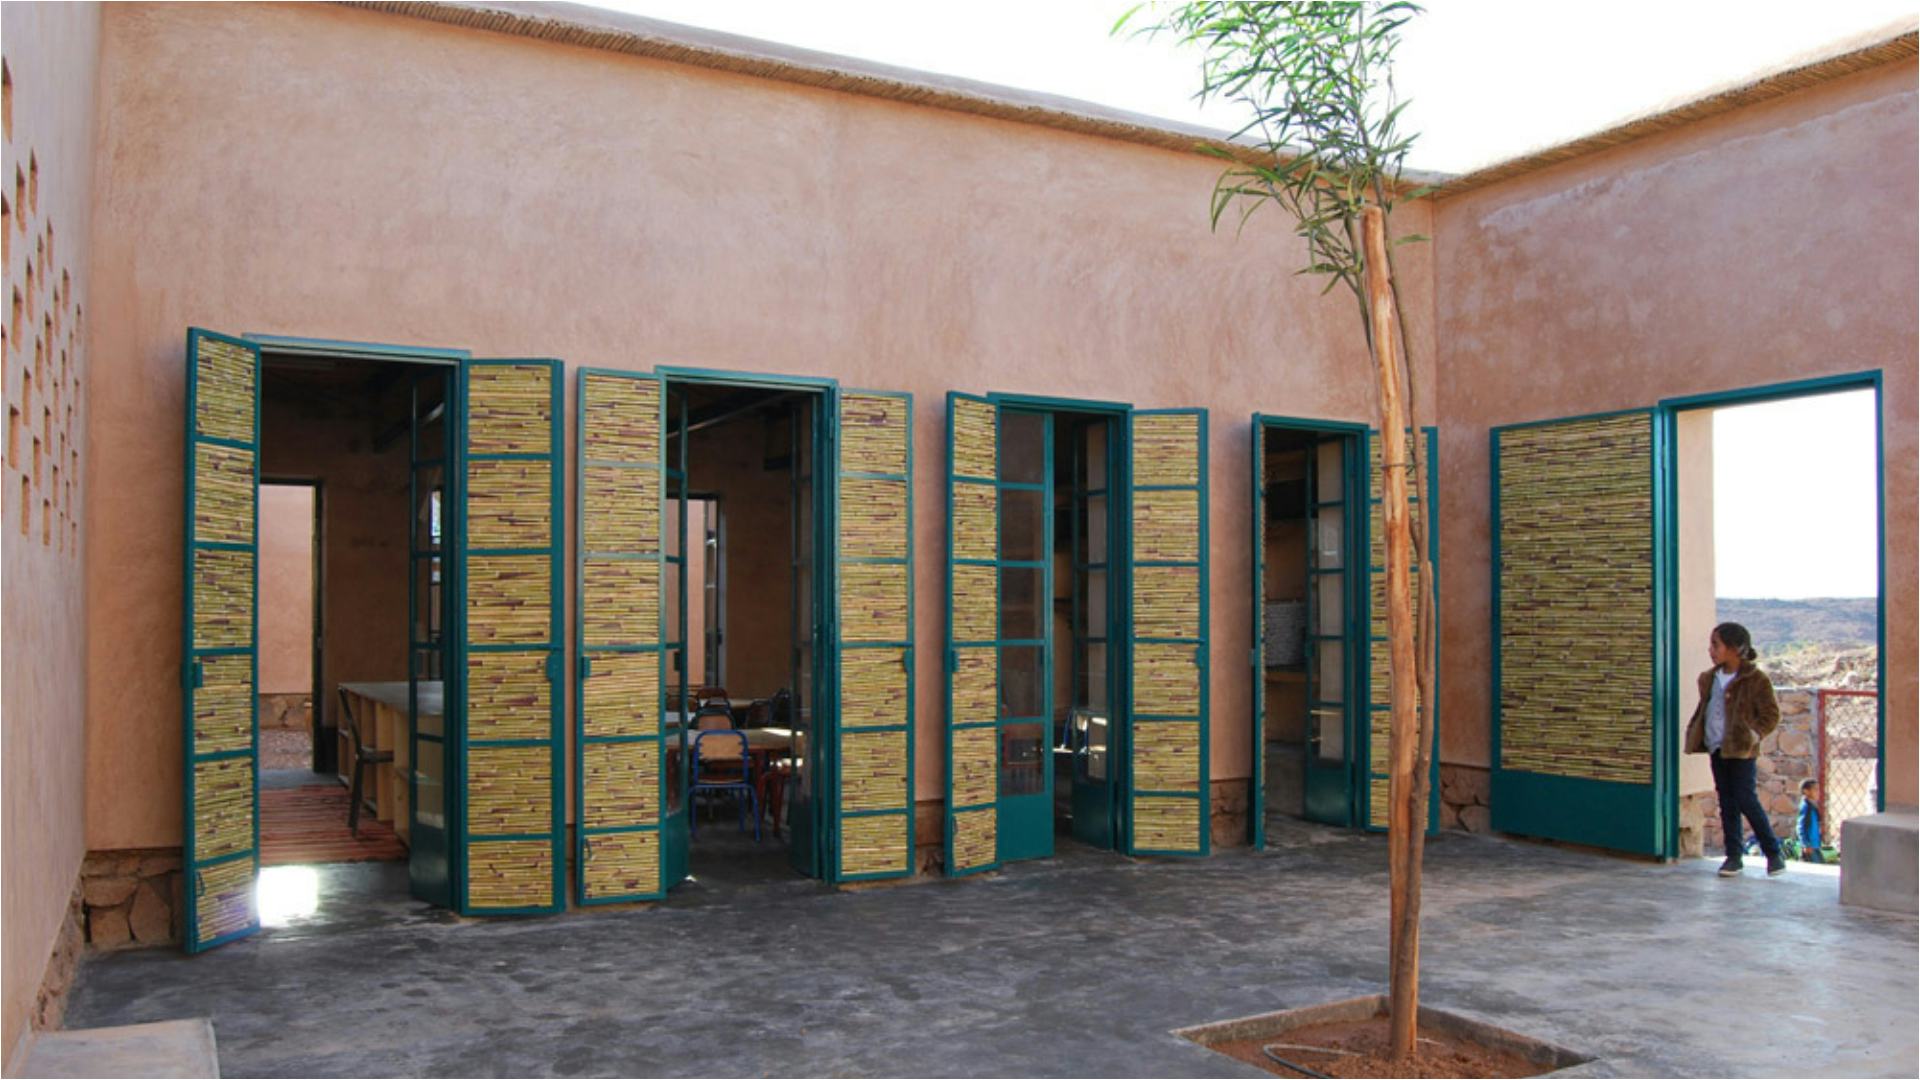 De kleuterschool in Ouled Merzoug, Marokko door BC architects & studies. Beeld Bregt Hoppenbrouwers